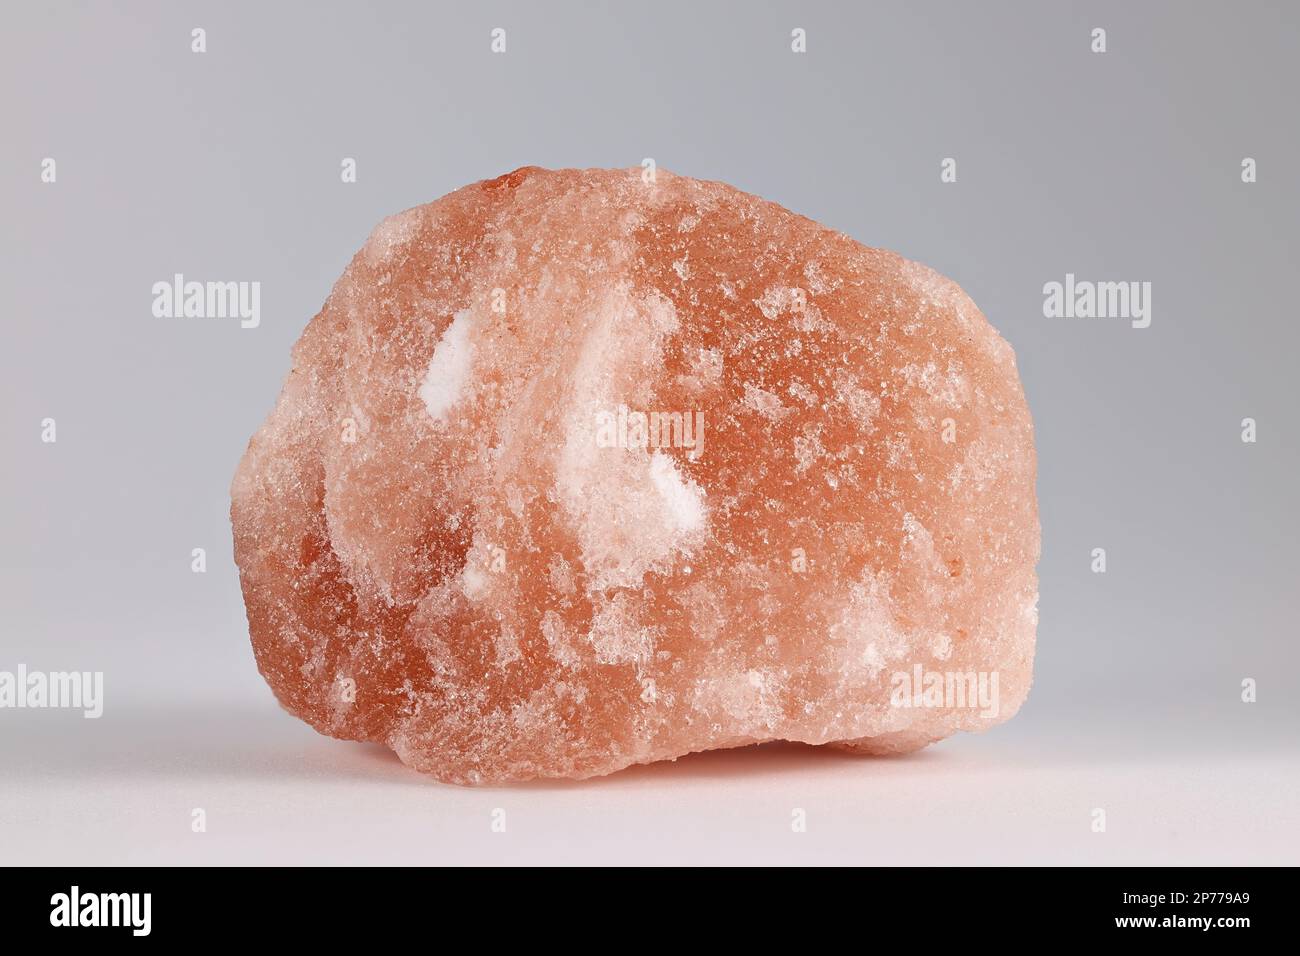 La halite, communément appelée sel de roche, est un type de sel, la forme minérale (naturelle) du chlorure de sodium (NaCl). Banque D'Images